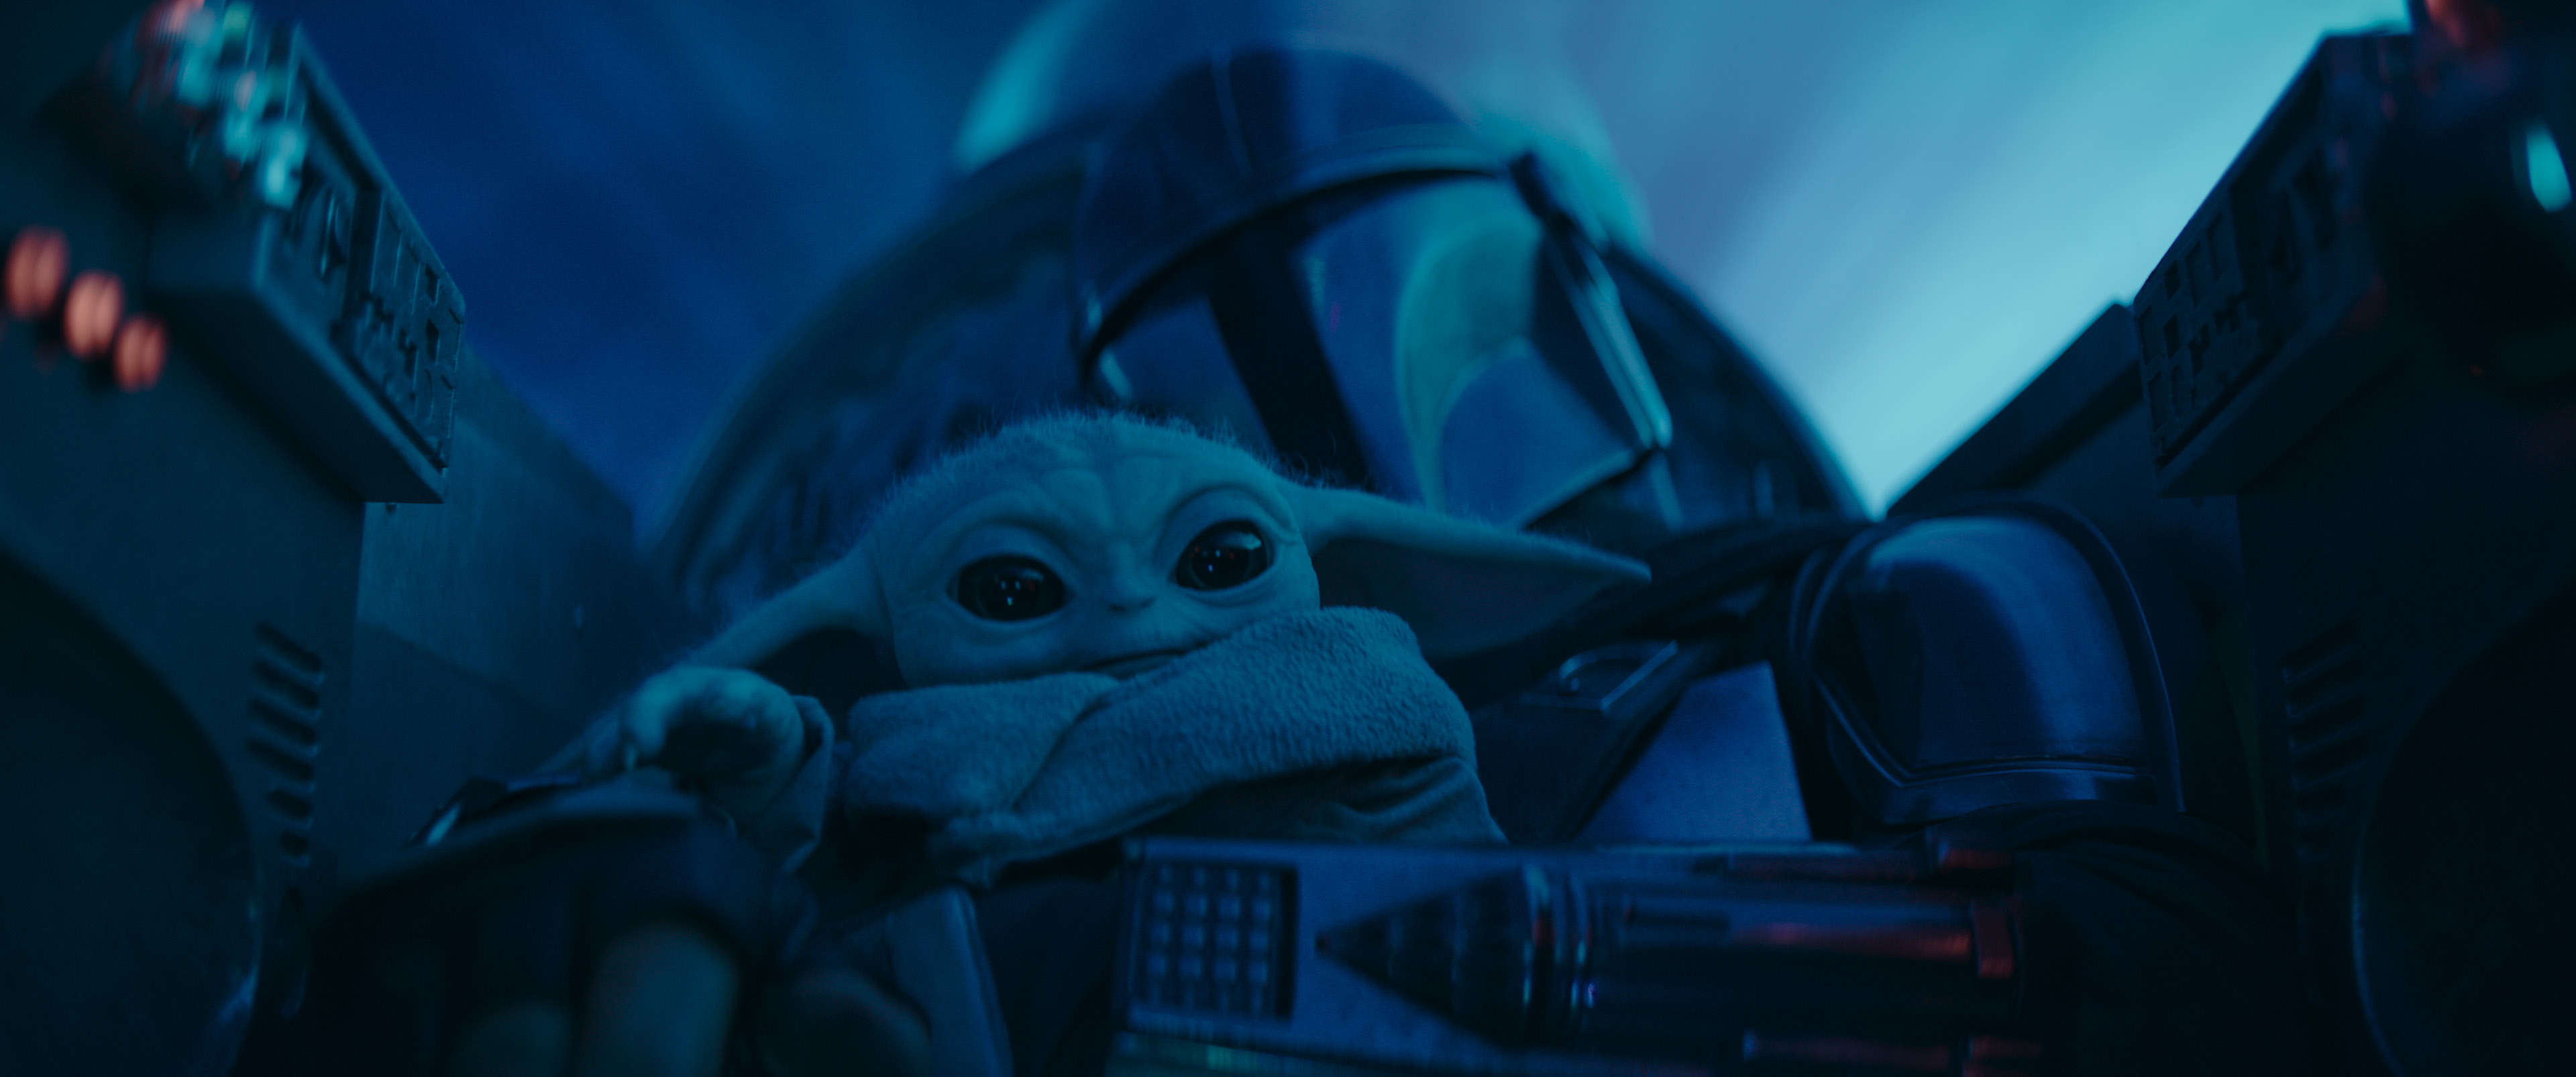 Mando acompanhado pelo "Bebé Yoda" a bordo da sua nave. Imagem da série The Mandalorian no Disney+.